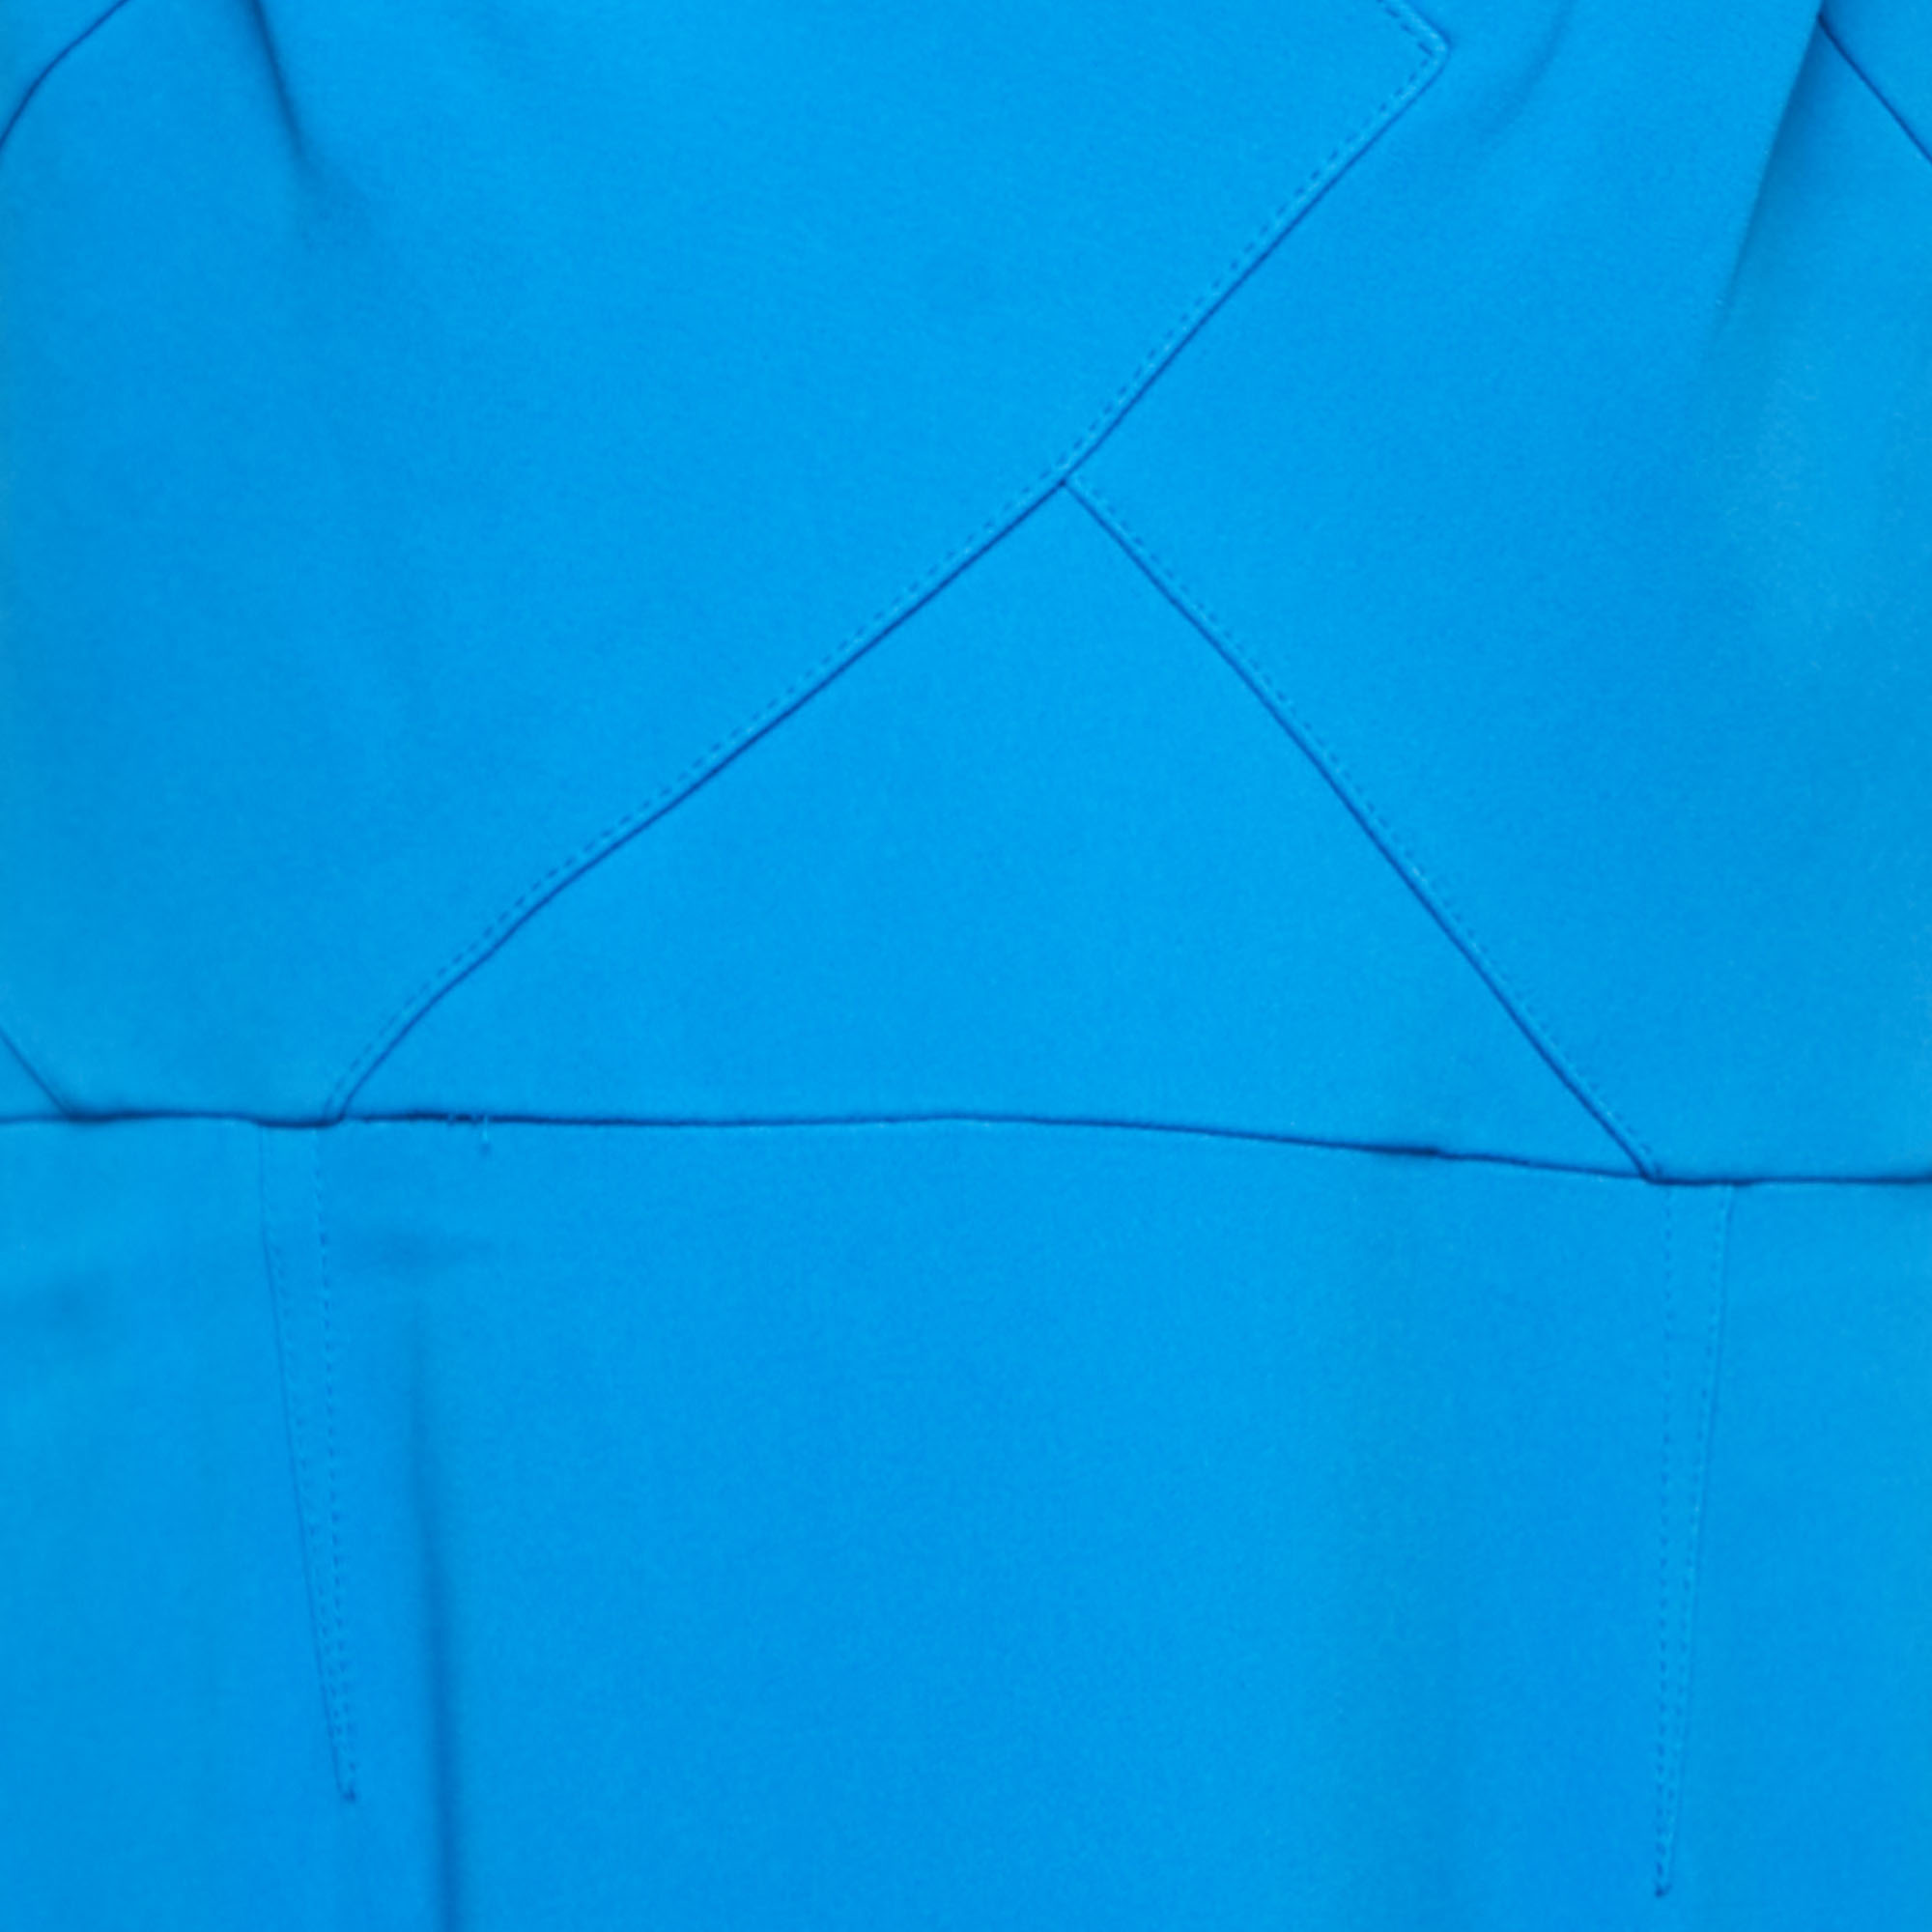 Roland Mouret Blue Crepe Salters Gown XL